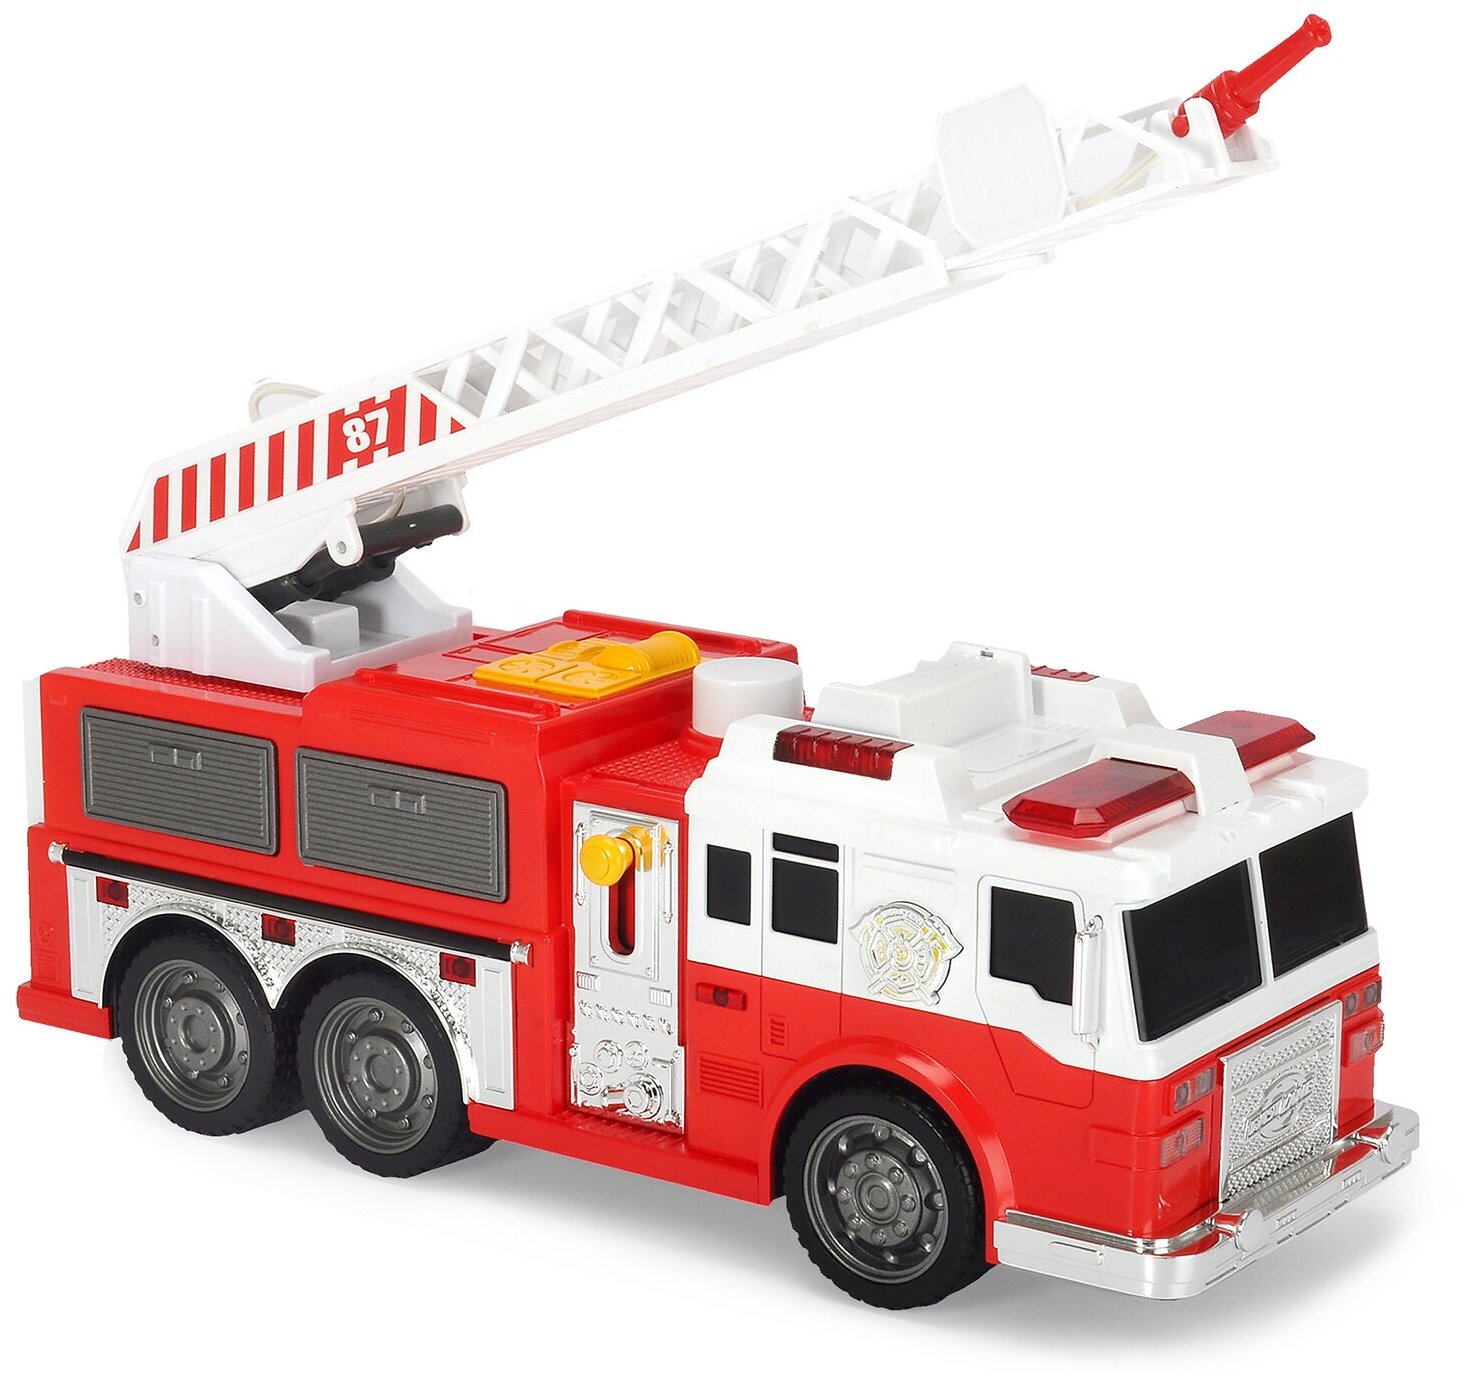 Пожарная машина Dickie, 36 см, свет, звук, водяной насос 3308377